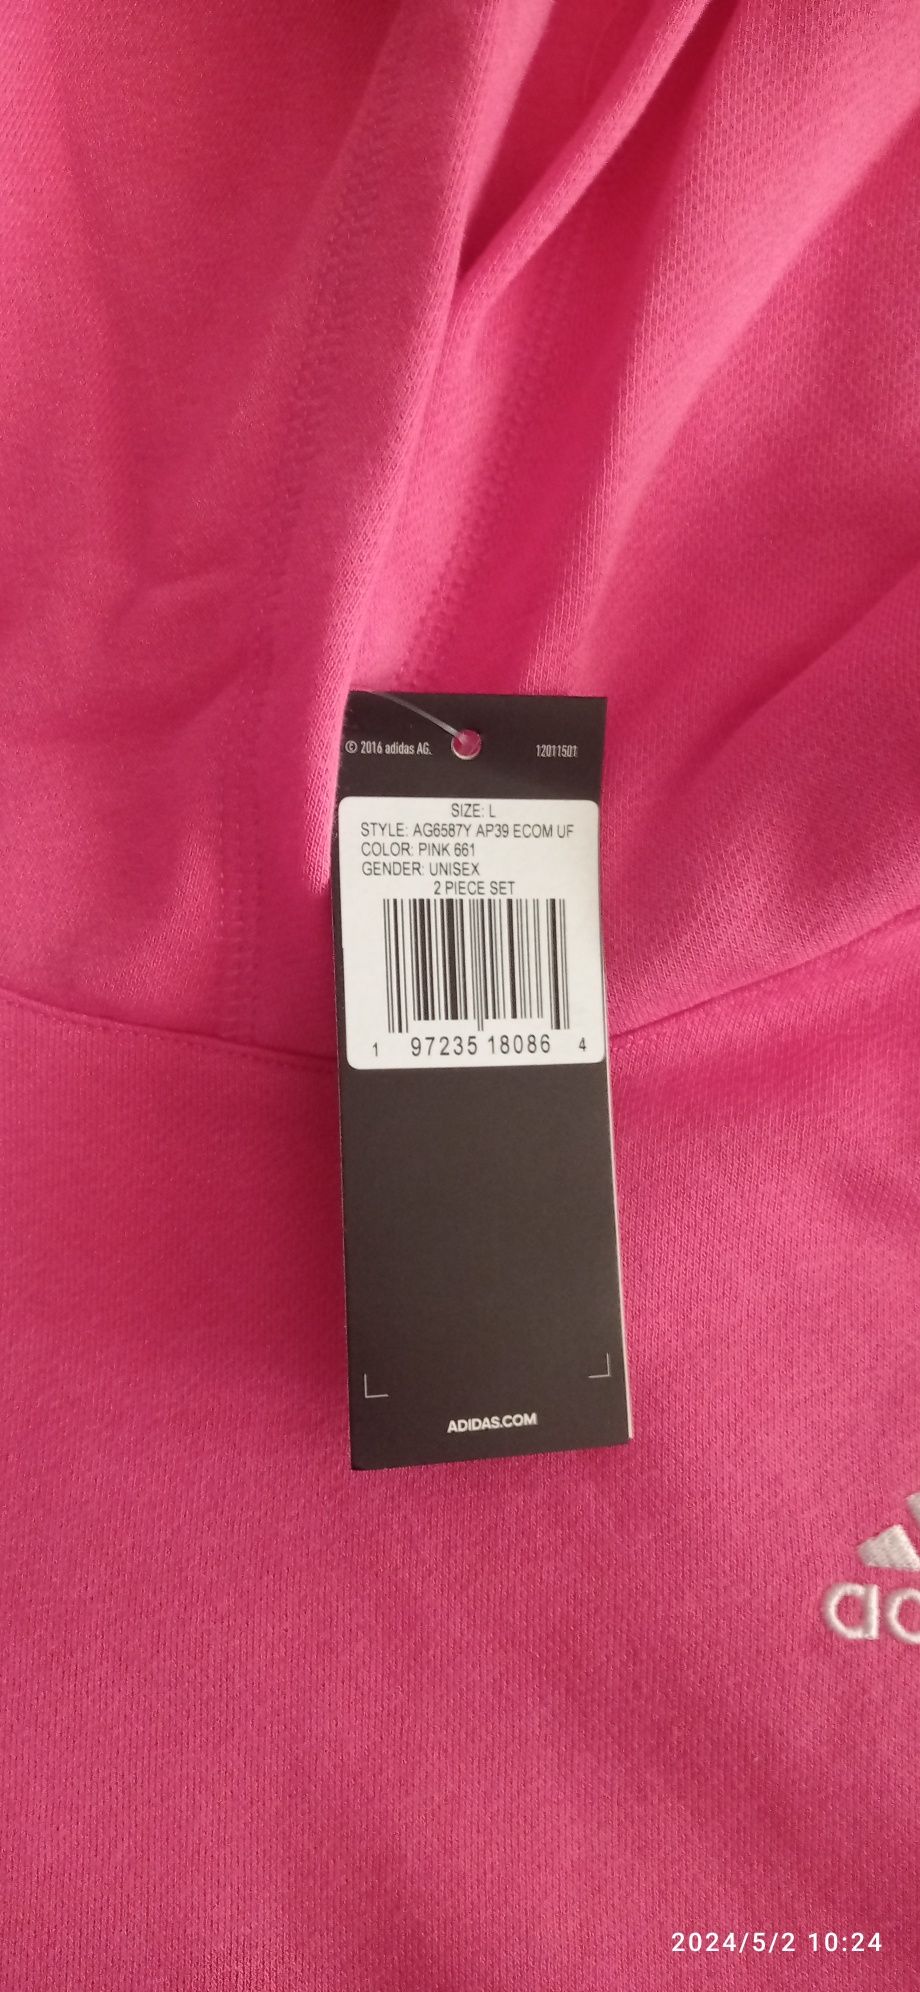 Продам жіночий костюм Adidas оригінал, привезений зі США. Розмір L